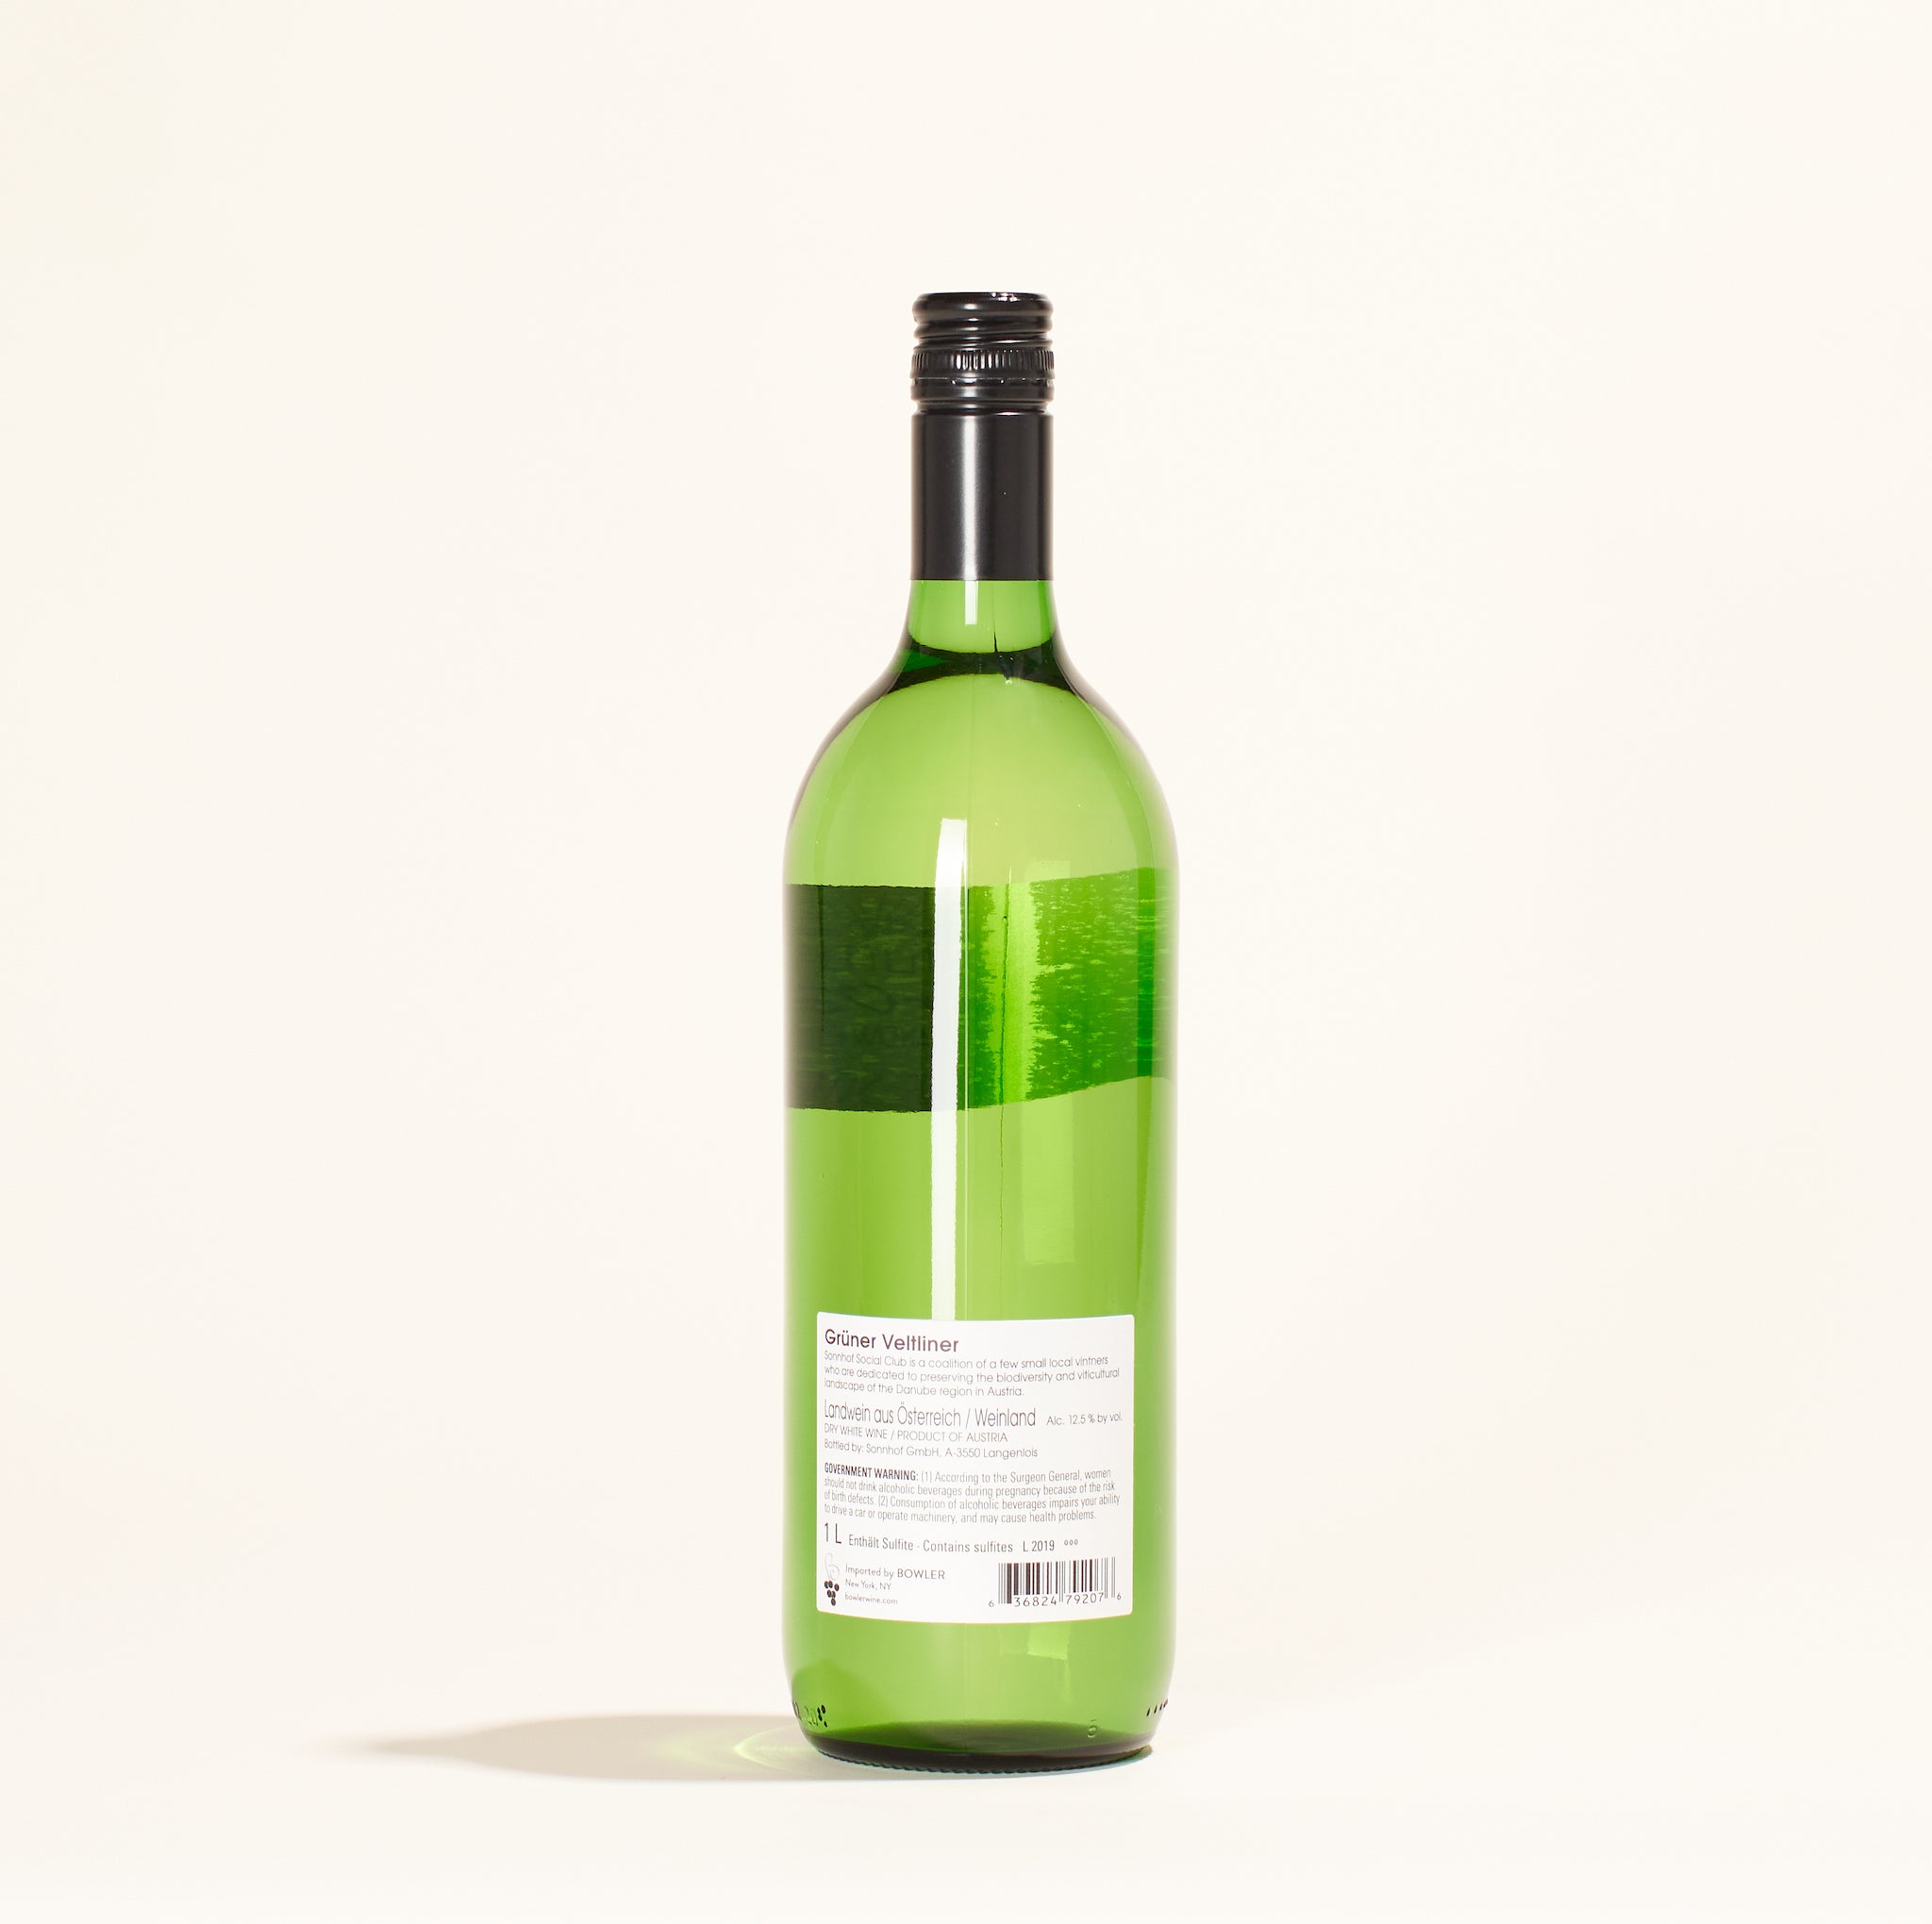 grüner veltliner sonnhof social club natural white wine kamptal austria